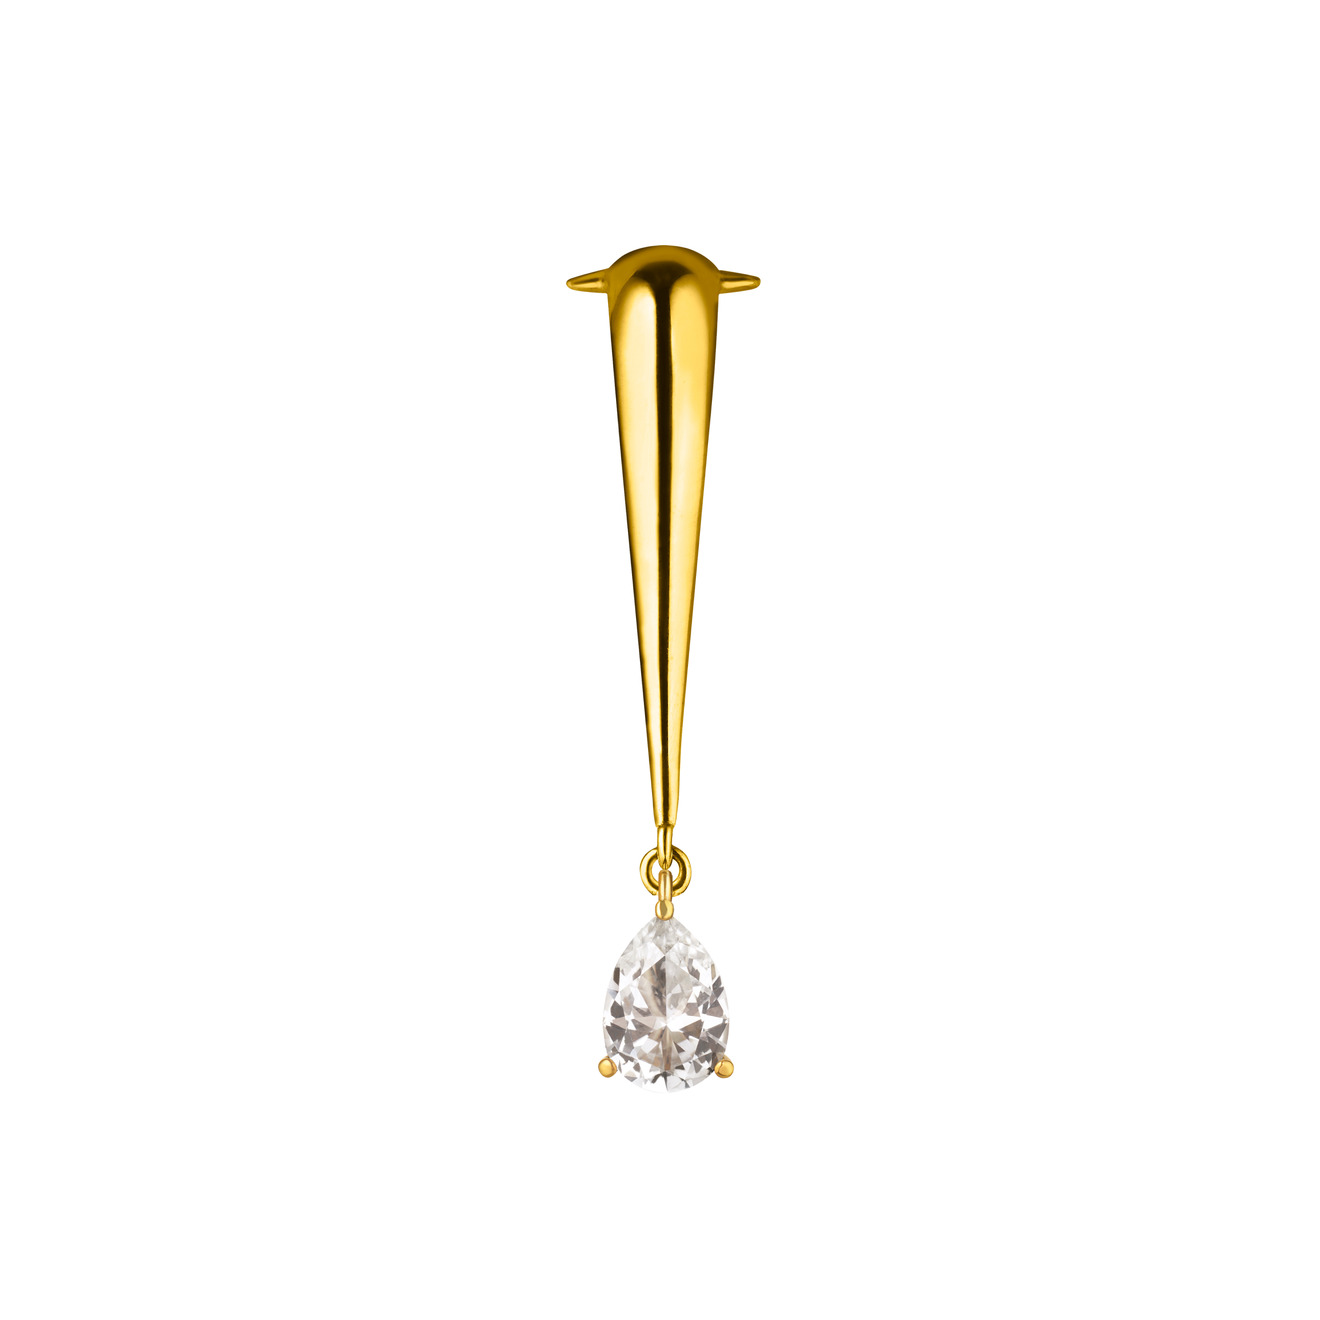 Vertigo Jewellery Lab Позолоченный клаймбер VENENUM CLIMBER TOPAZ из серебра с топазом vertigo jewellery lab позолоченный браслет bug из серебра